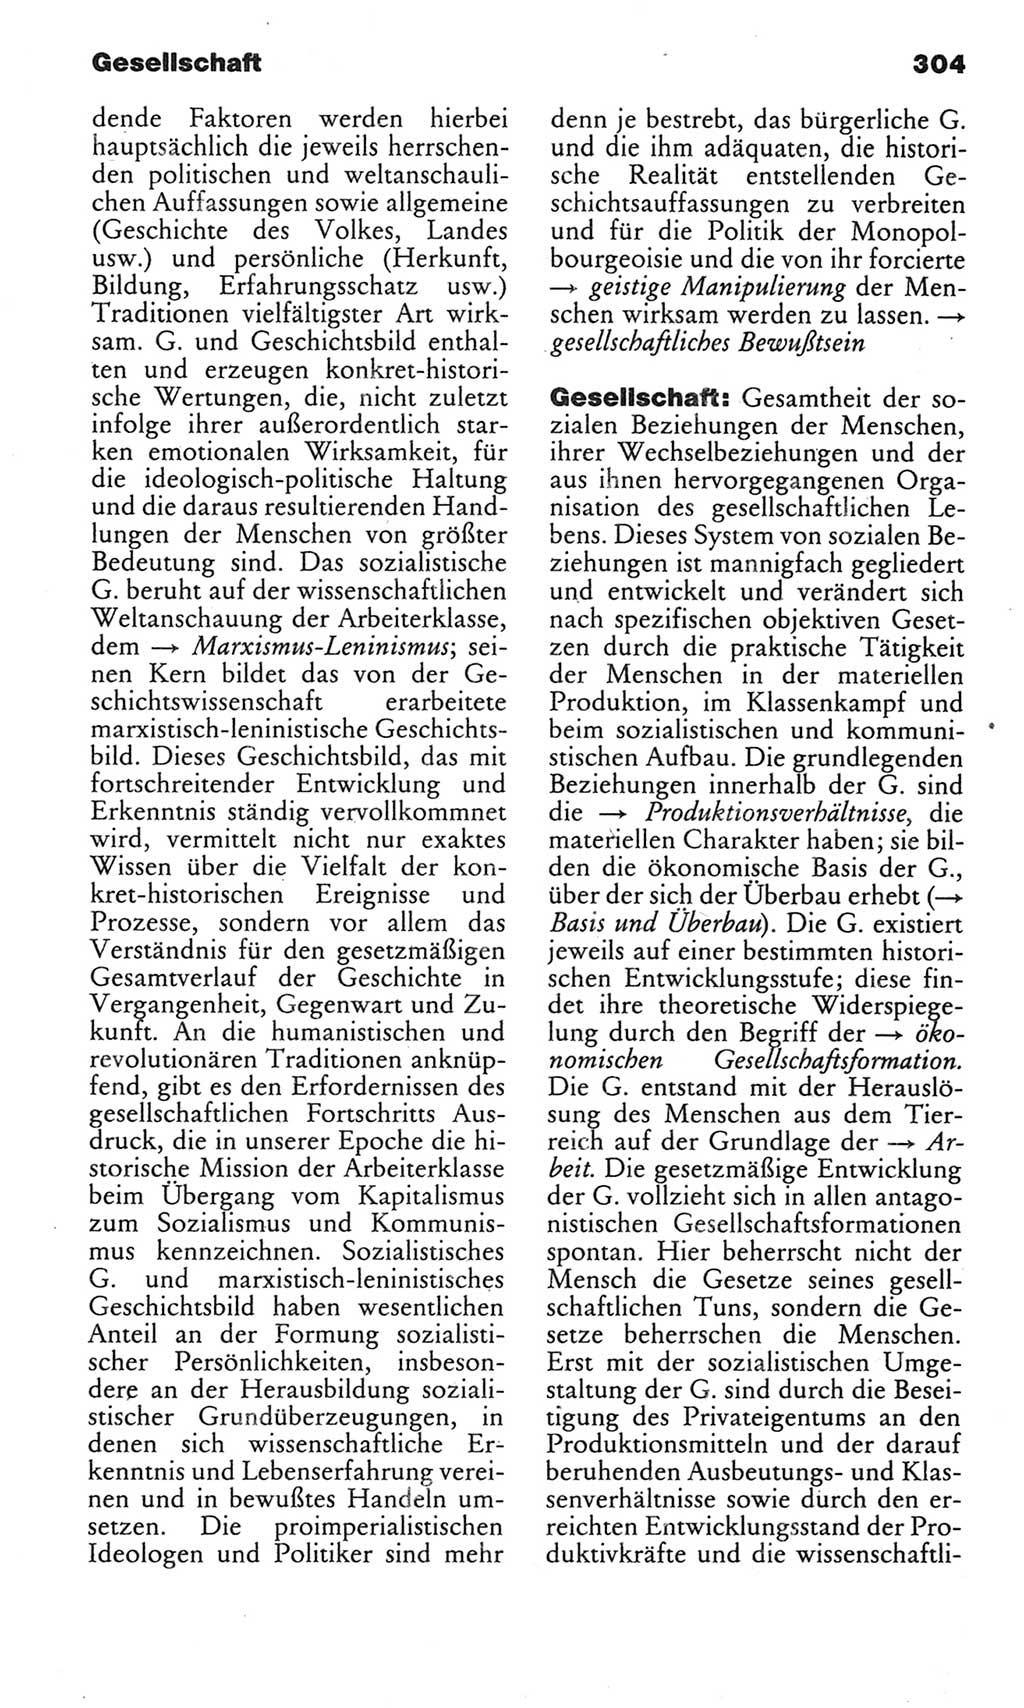 Kleines politisches Wörterbuch [Deutsche Demokratische Republik (DDR)] 1983, Seite 304 (Kl. pol. Wb. DDR 1983, S. 304)